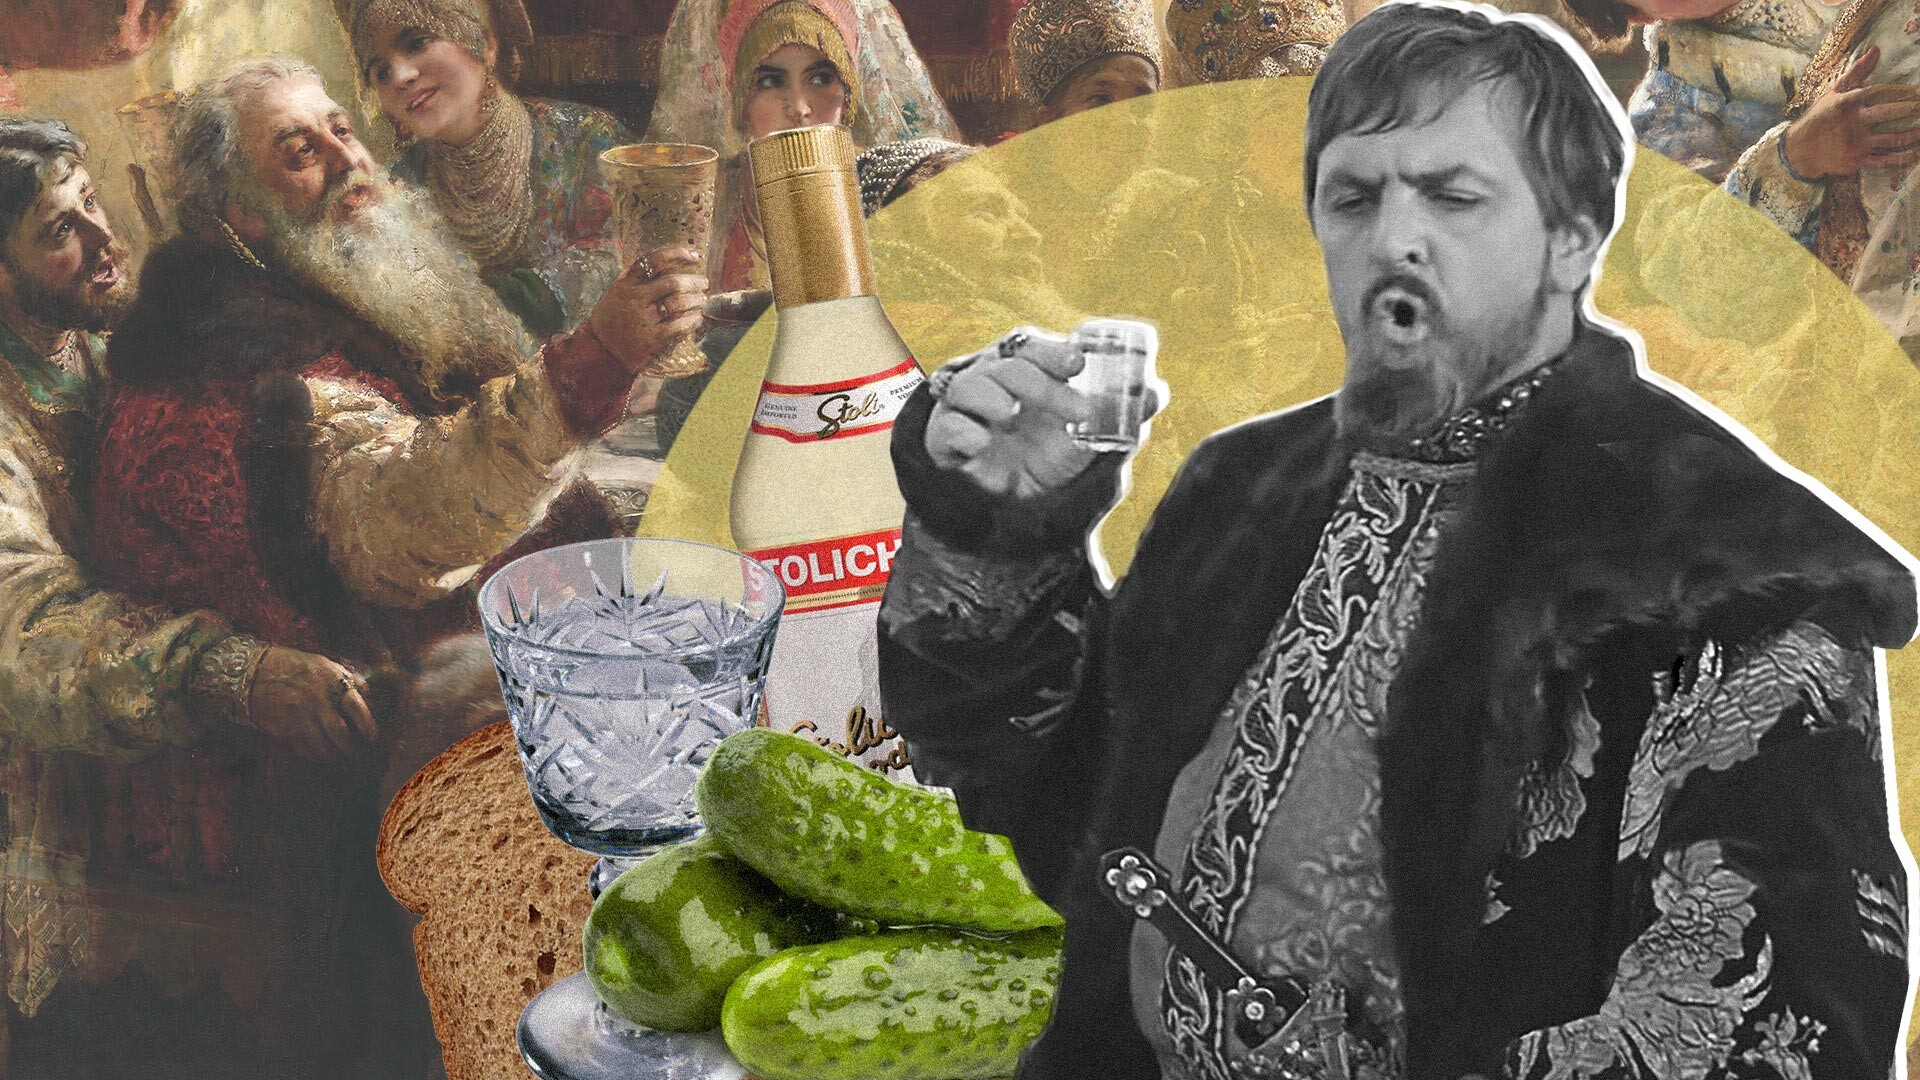 Lo zar Ivan il Terribile era solito bere vodka in varie occasioni

